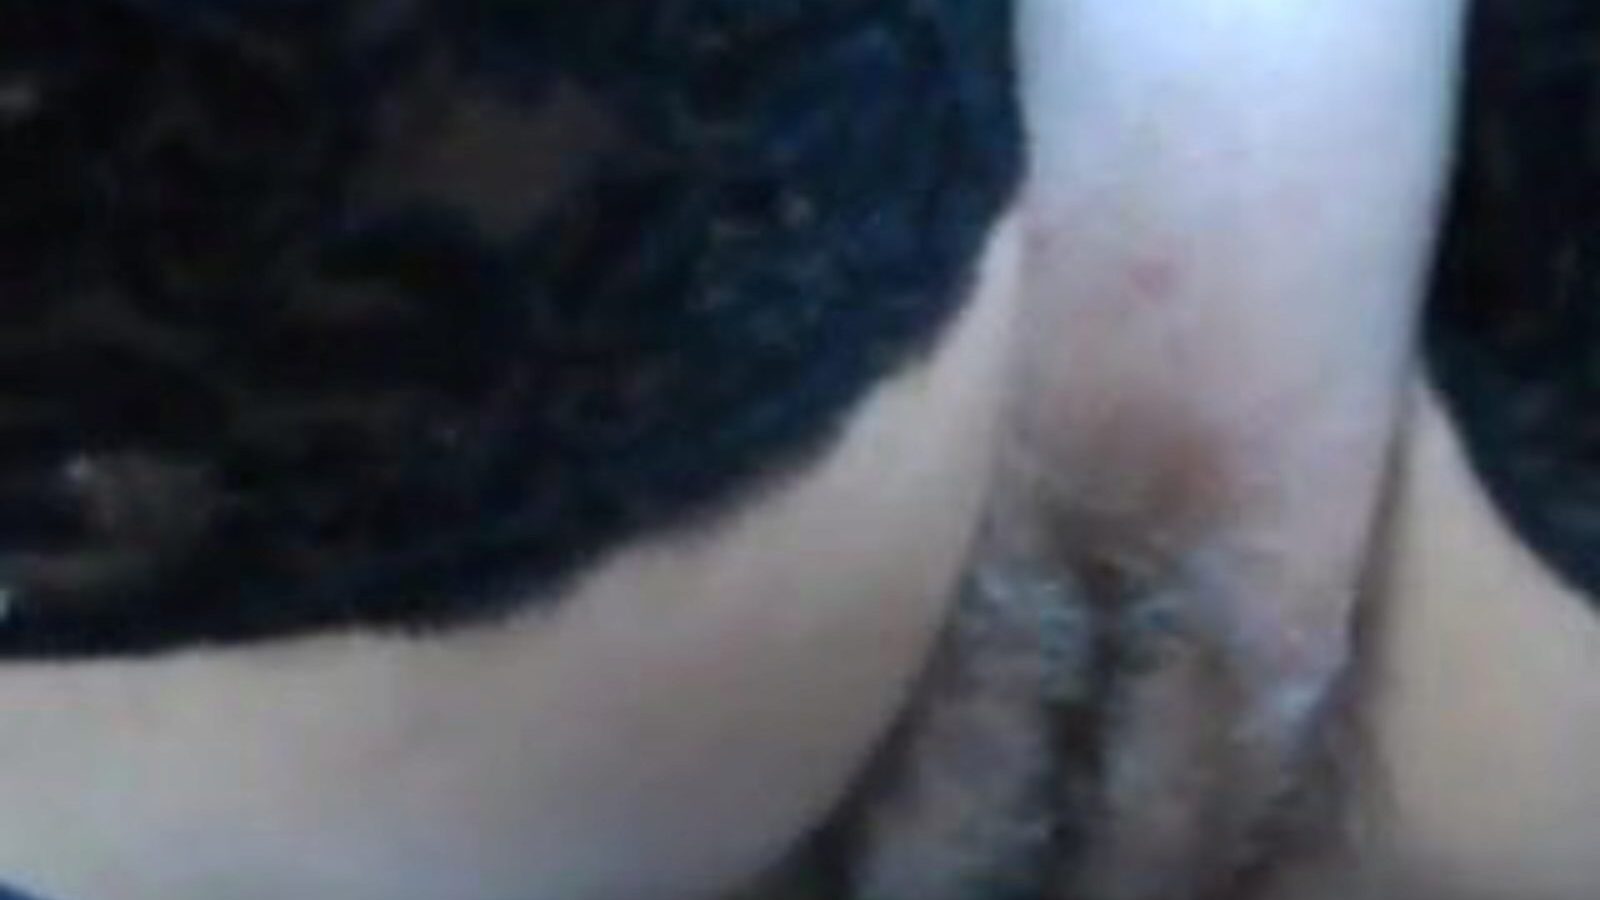 fuck and show: chatte poilue baise vidéo porno b9 - xhamster regarde baise et montre une vidéo de sexe en tube gratuit pour tous sur xhamster, avec la collection faisant autorité de séquences d'épisodes pornos gratuits et xxx & fuck show